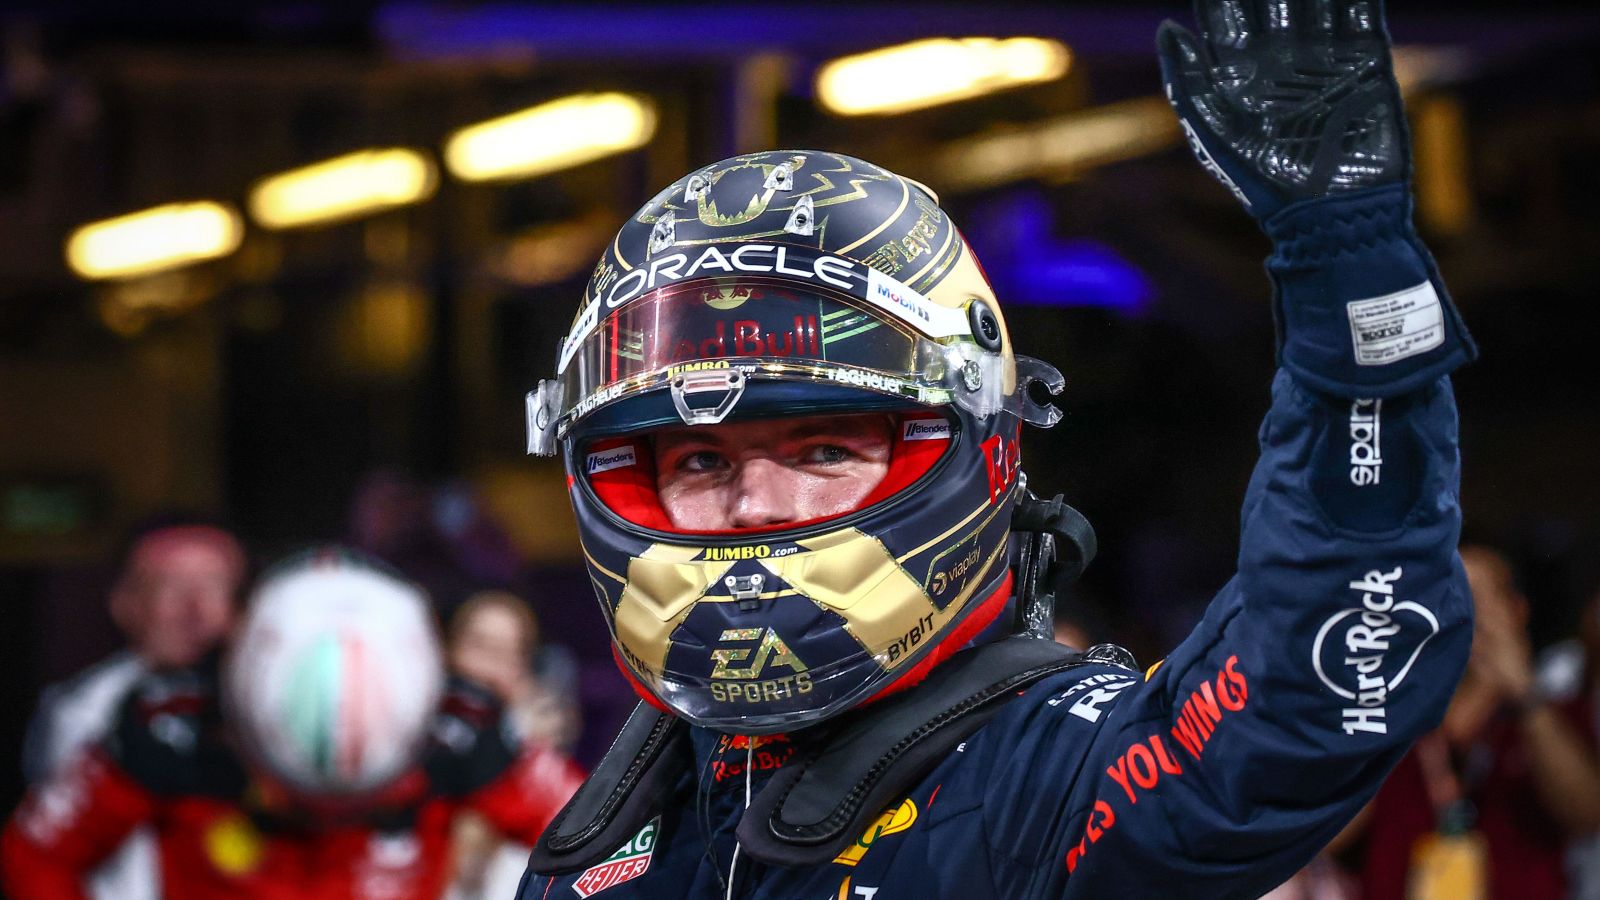 Max Verstappen: Red Bull's Max Verstappen wins Abu Dhabi Grand